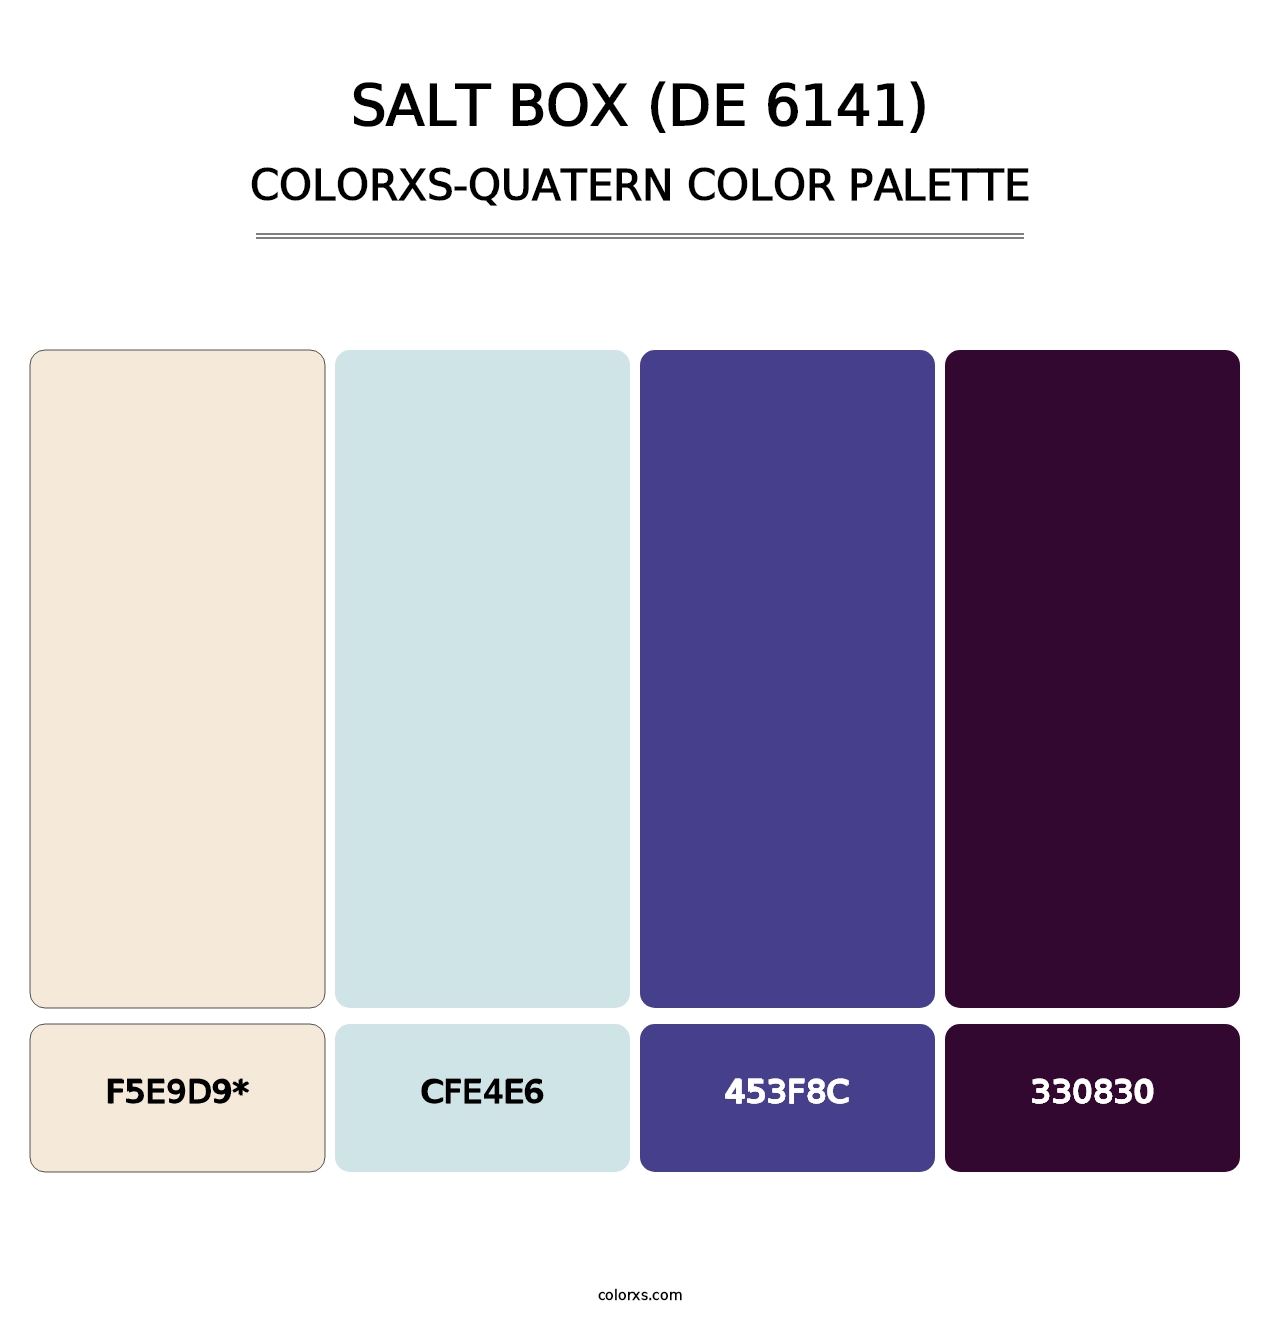 Salt Box (DE 6141) - Colorxs Quatern Palette